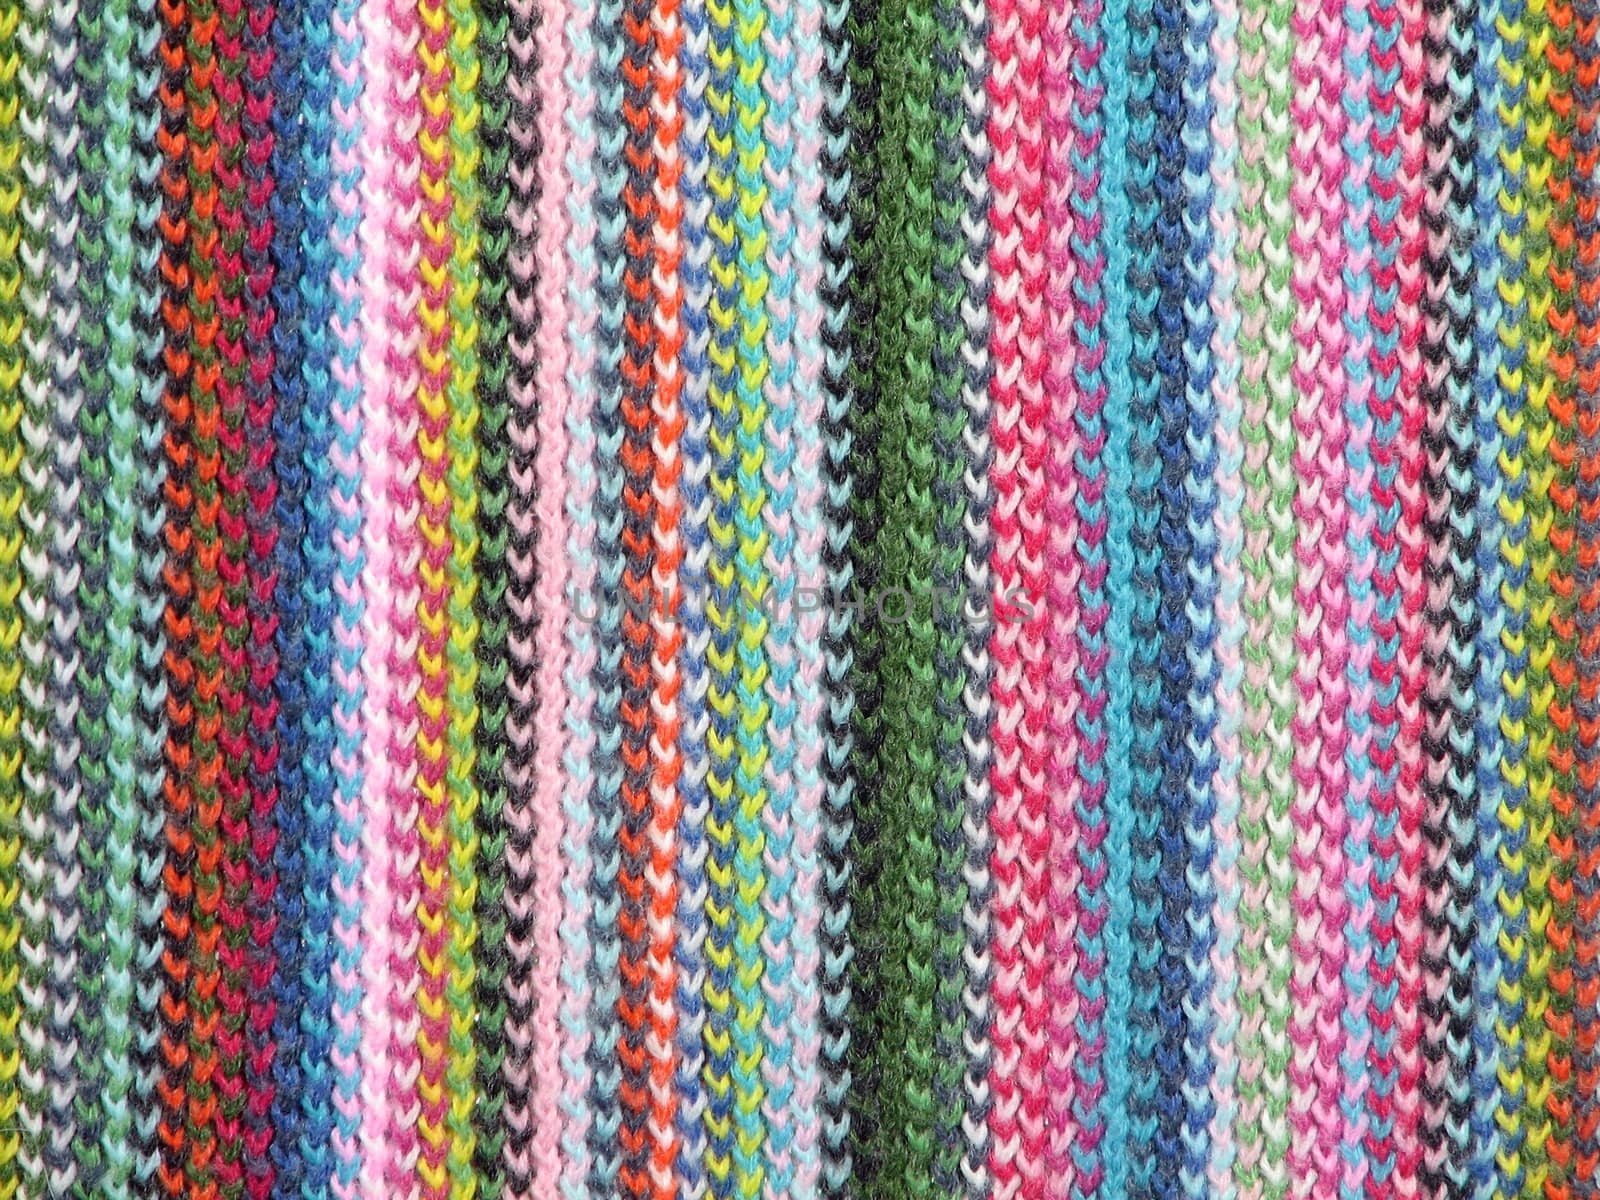 Colorful wool pattern by anikasalsera